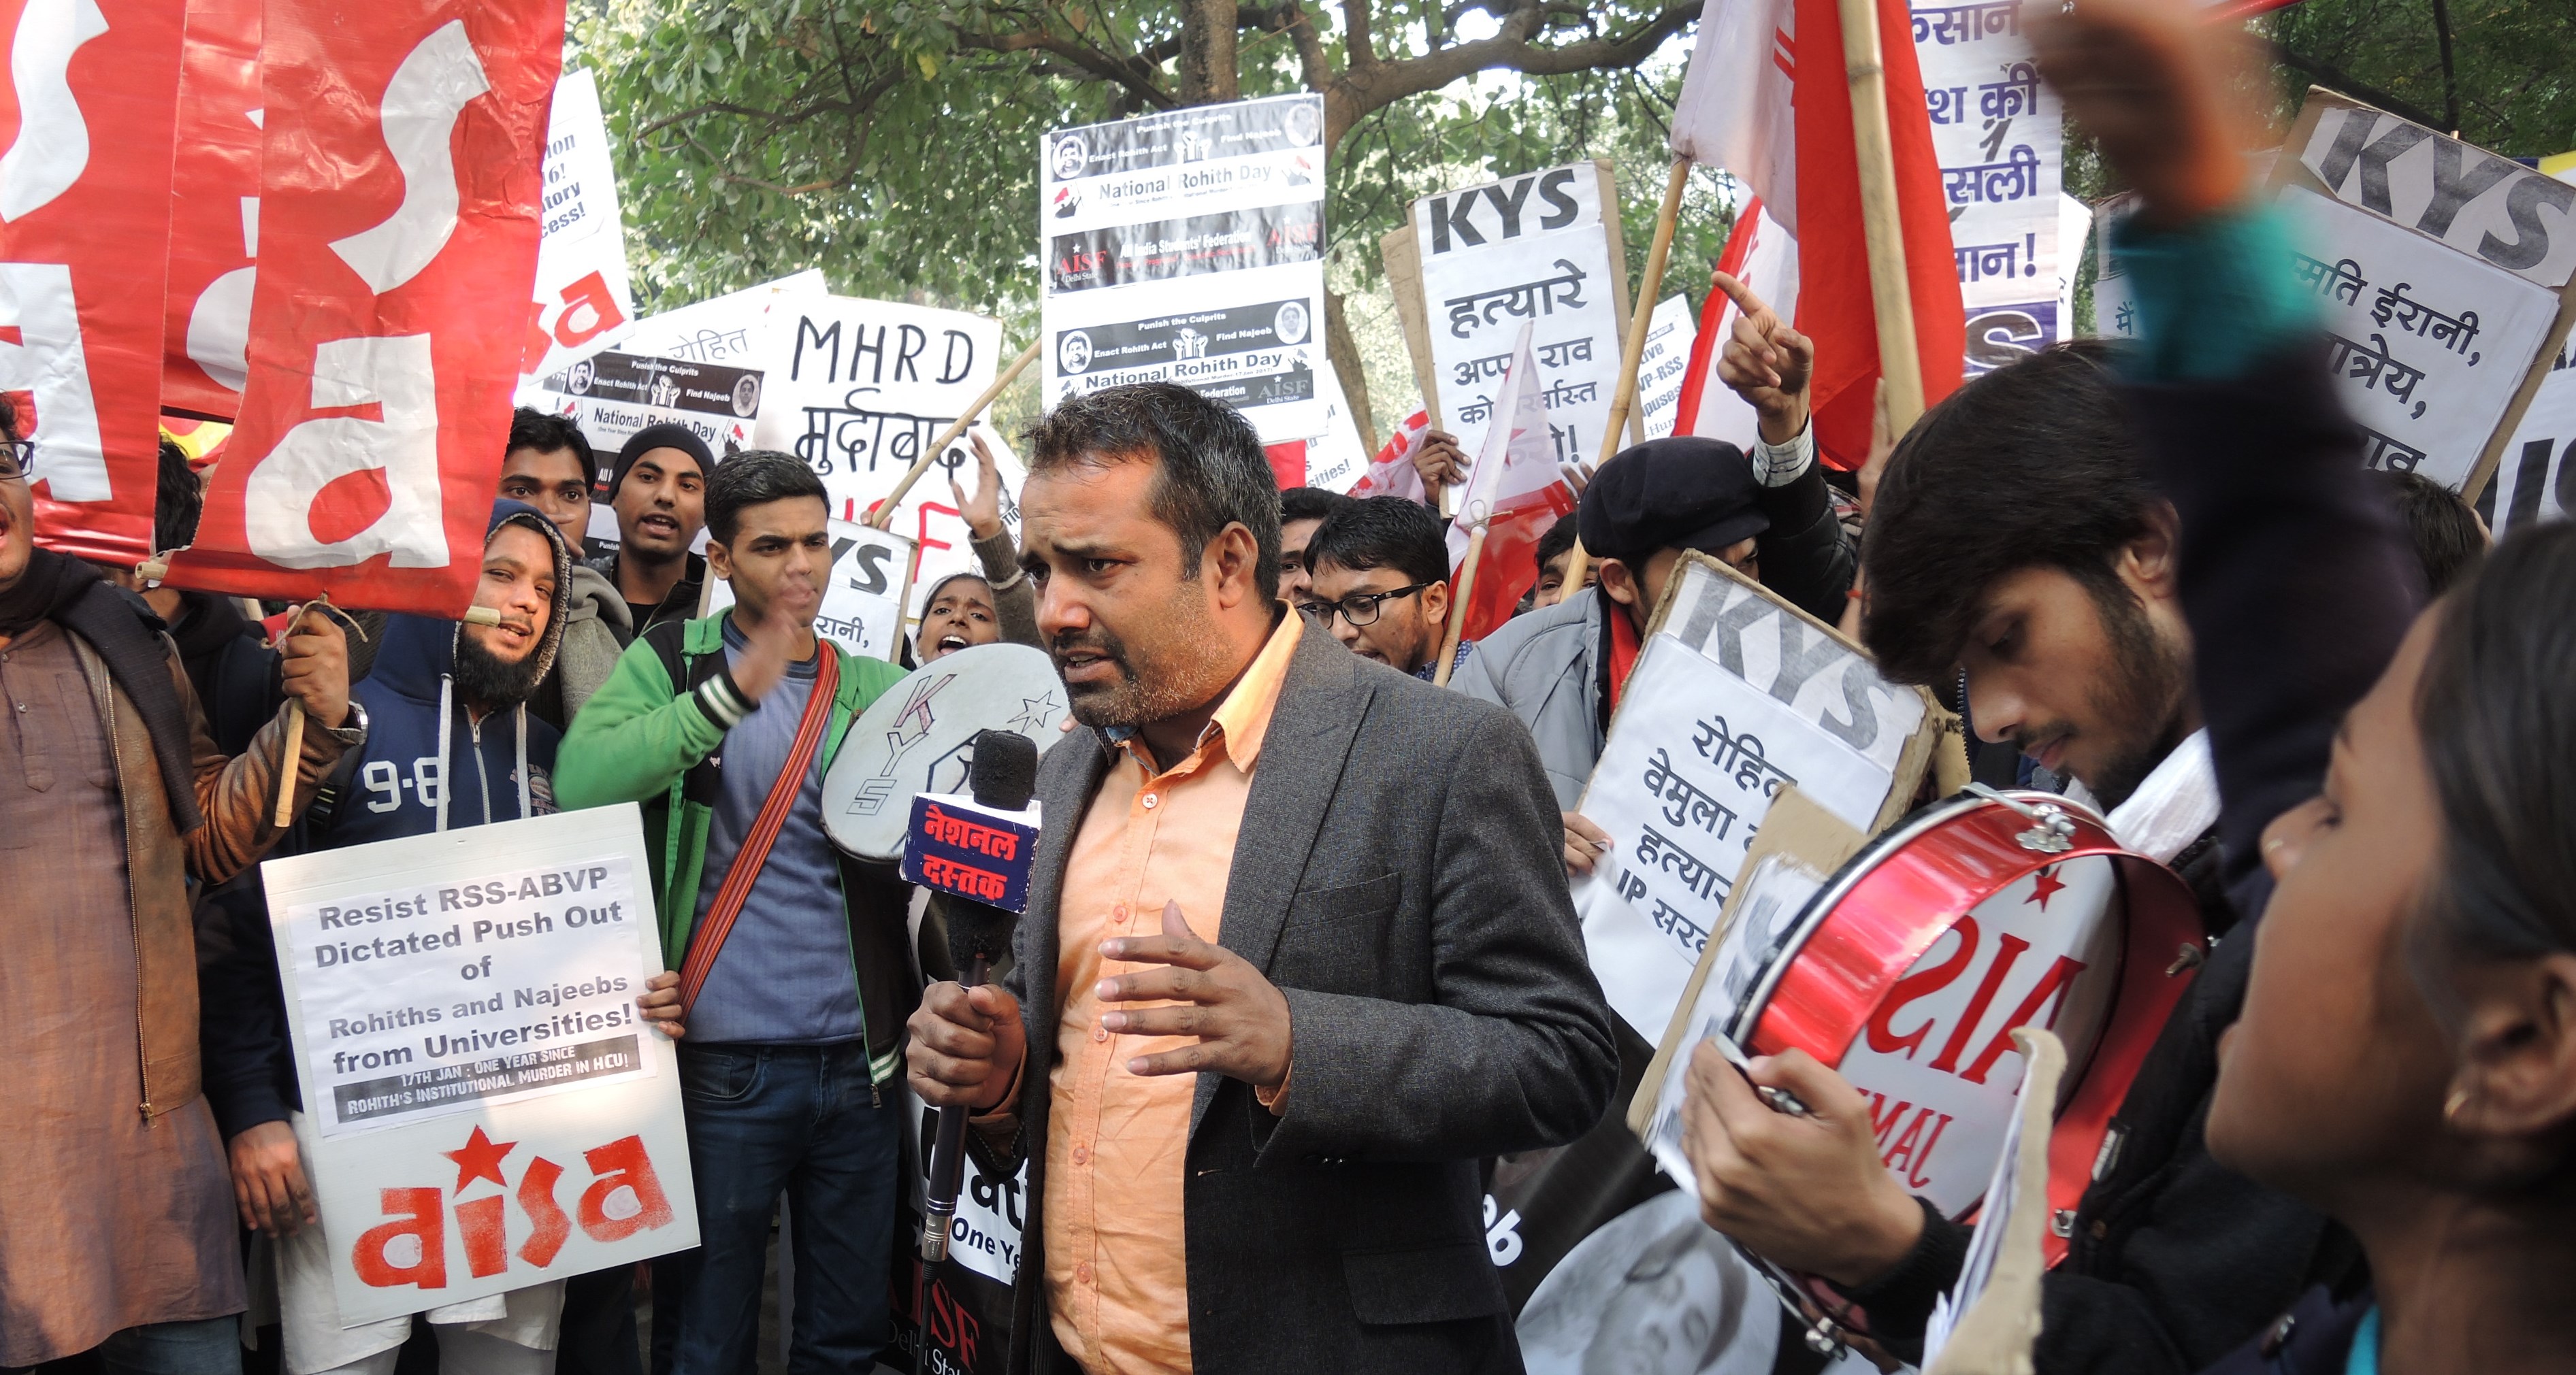 الطلاب في نيودلهي في الهند يحتجون على محاولات إسكات الجامعات الناقدة ومعاقبة الطلاب الصريحين.  (photo: Dominik Muller)